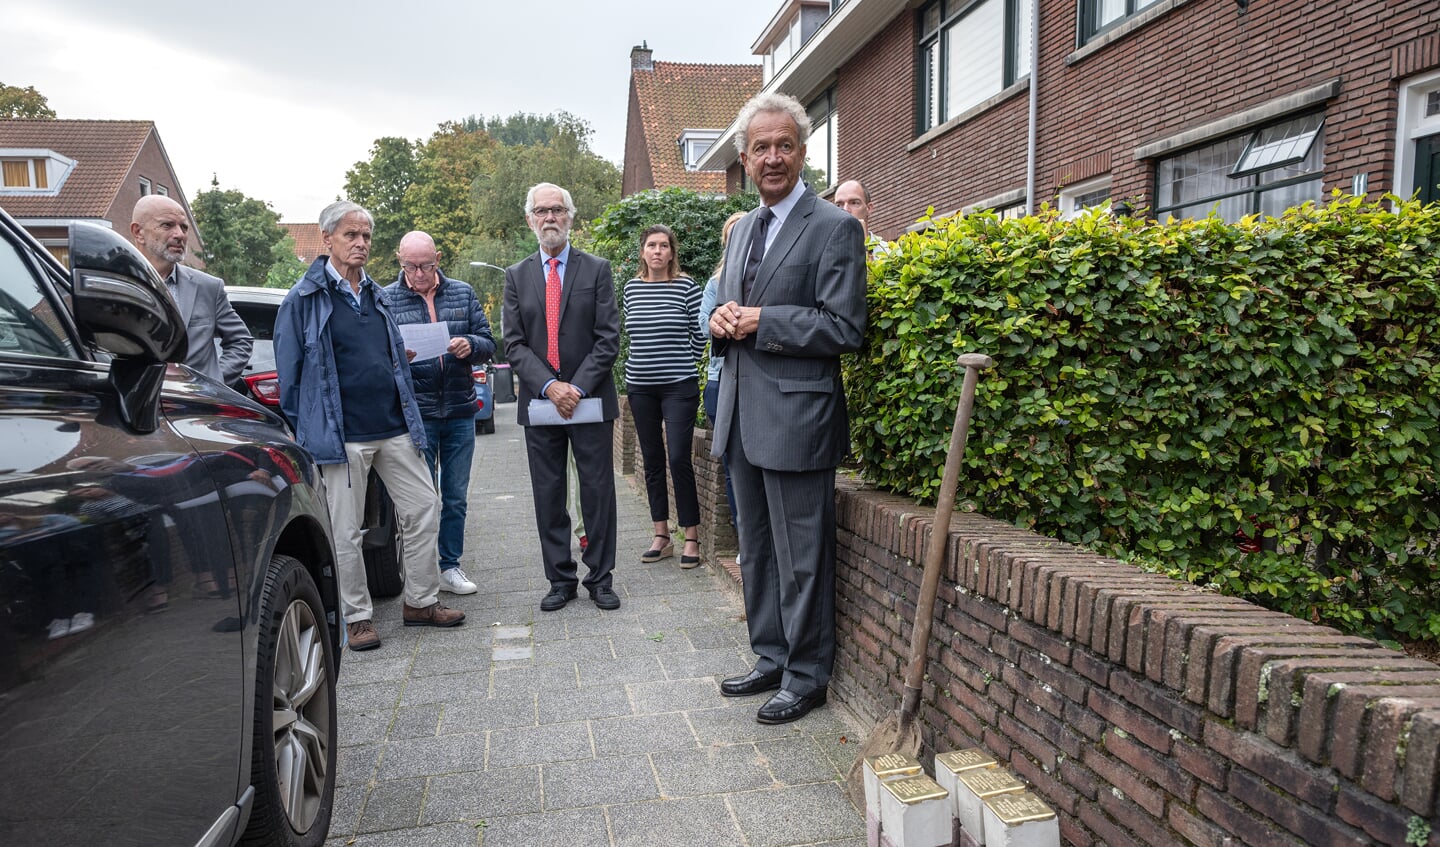 Michiel van Haersma Buma, oud-burgemeester van Voorburg en voorzitter van de stichting Stolpersteine bij de te plaatsen struikelstenen (foto: Michel Groen).